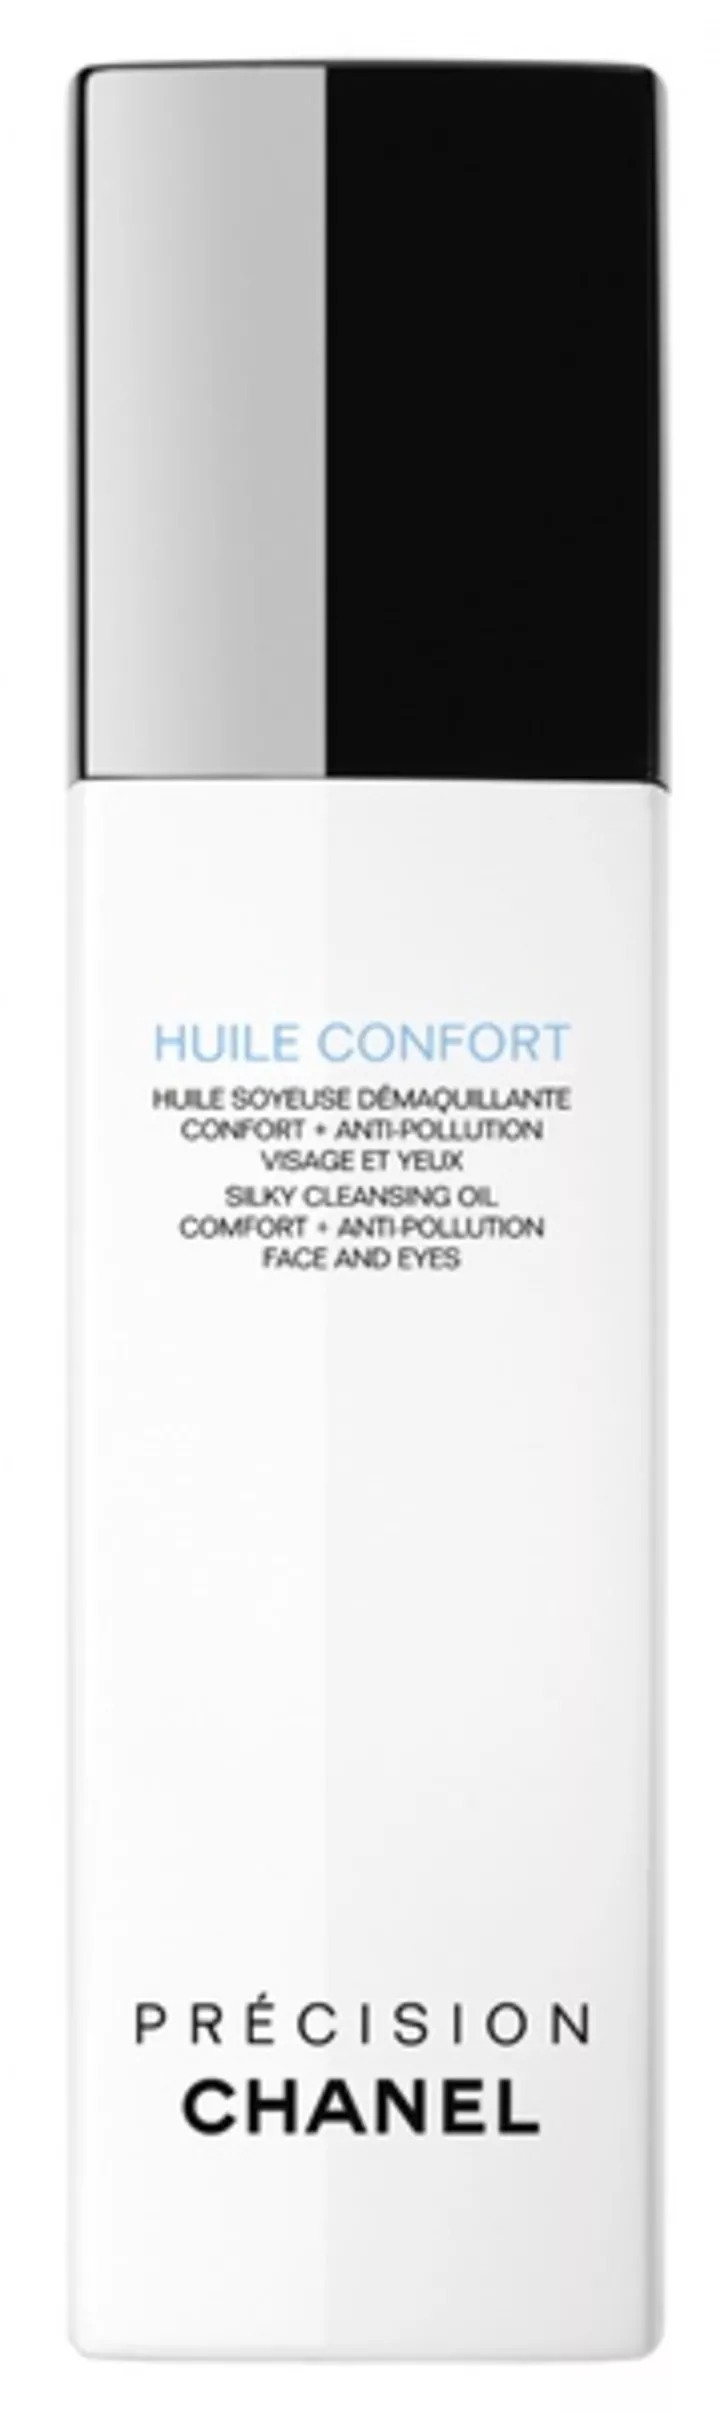 Шелковистое масло для снятия макияжа Huile
Confort Precision, Chanel